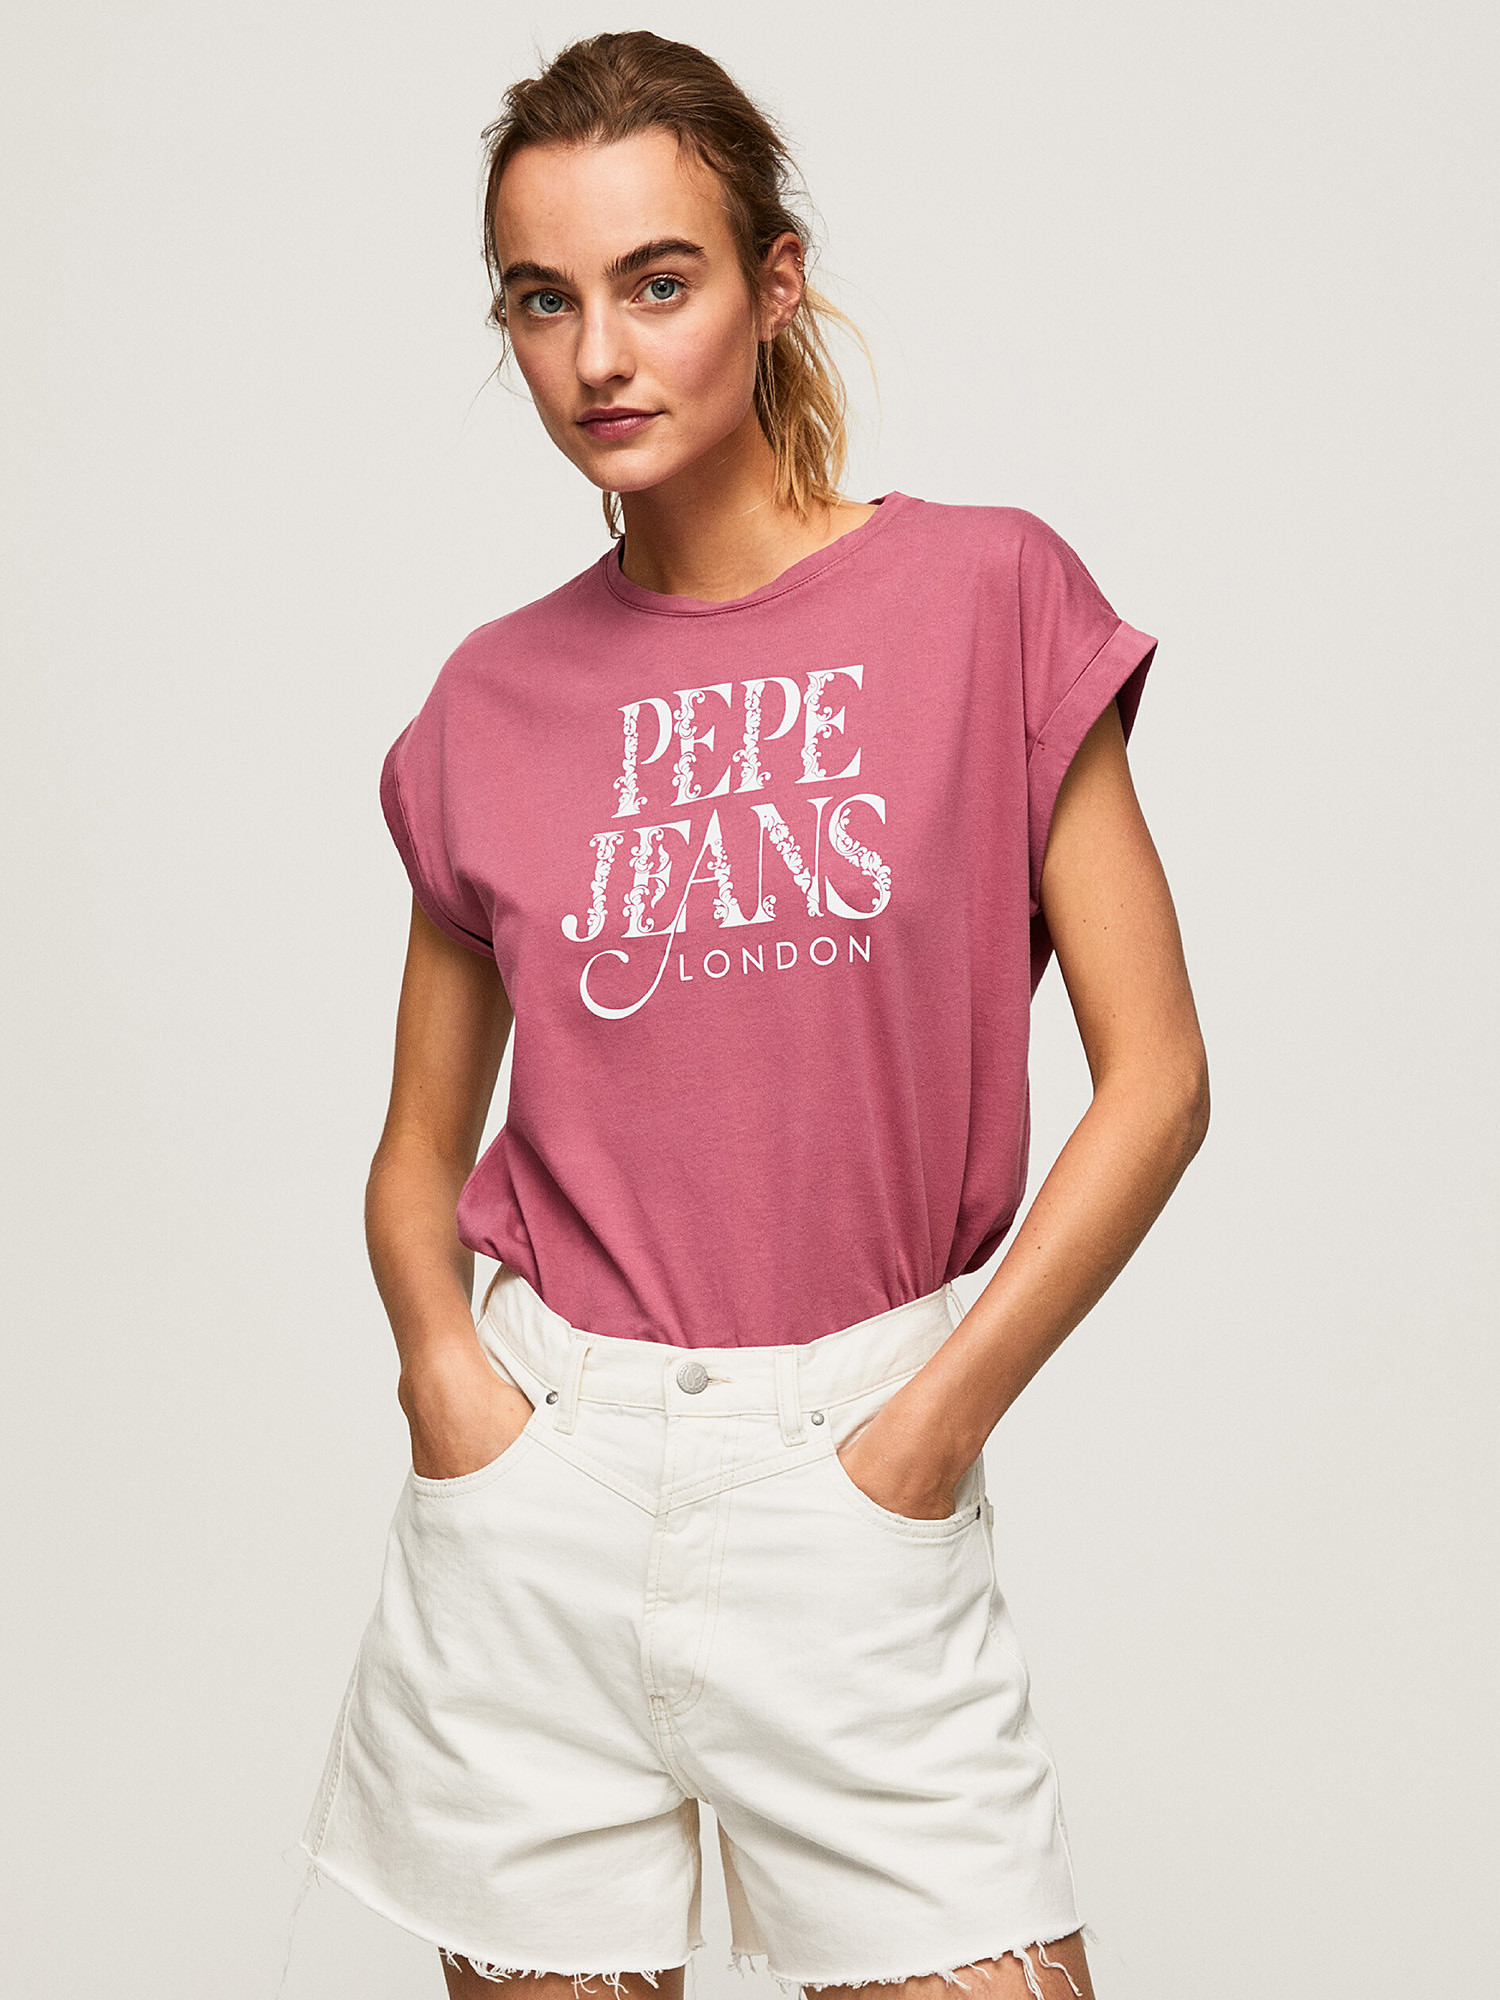 Pepe Jeans - Cotton logo T-shirt, Dark Pink, large image number 3